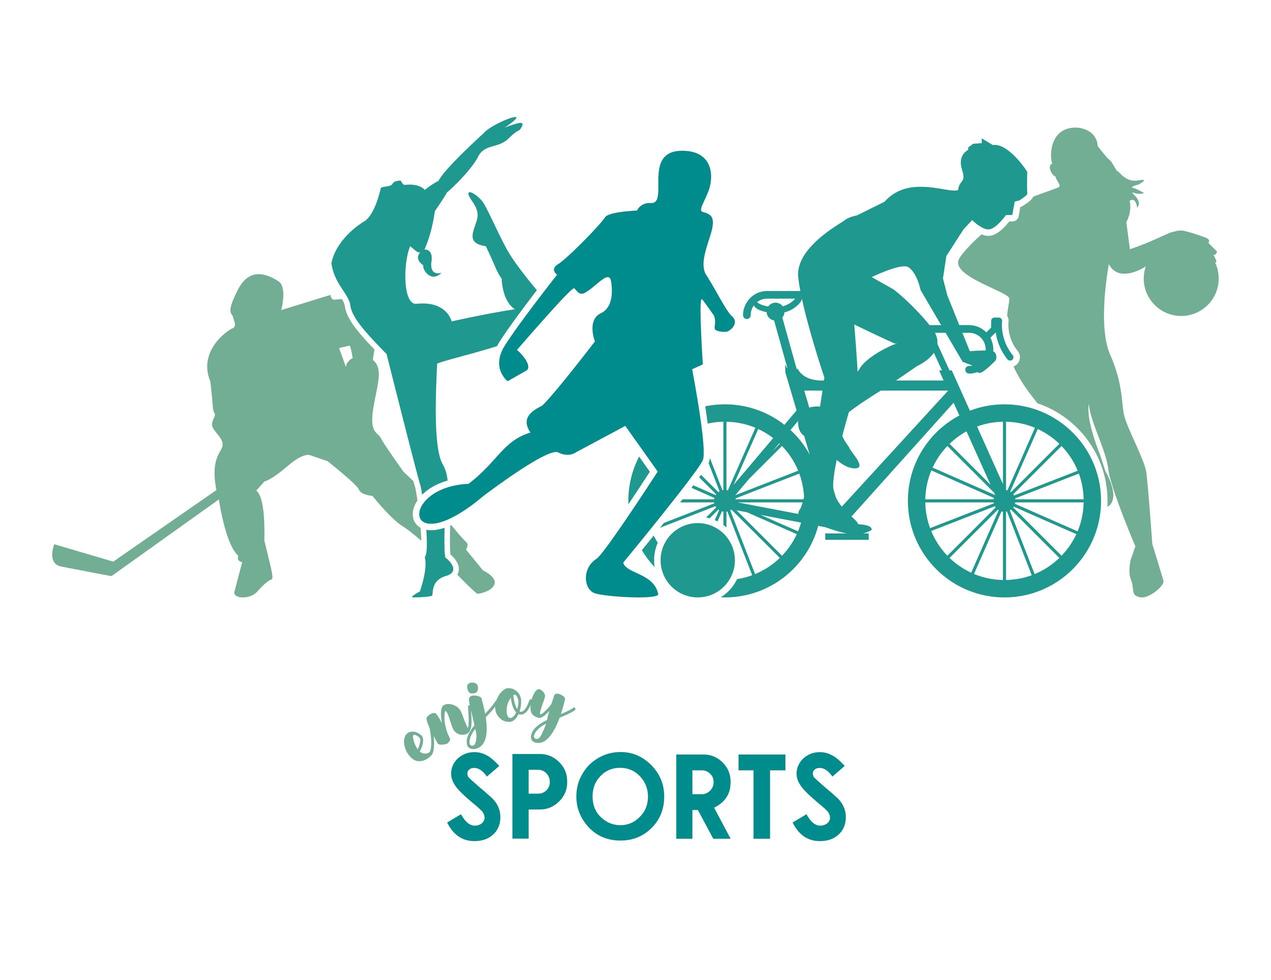 affiche de temps de sport avec des silhouettes d'athlètes verts vecteur